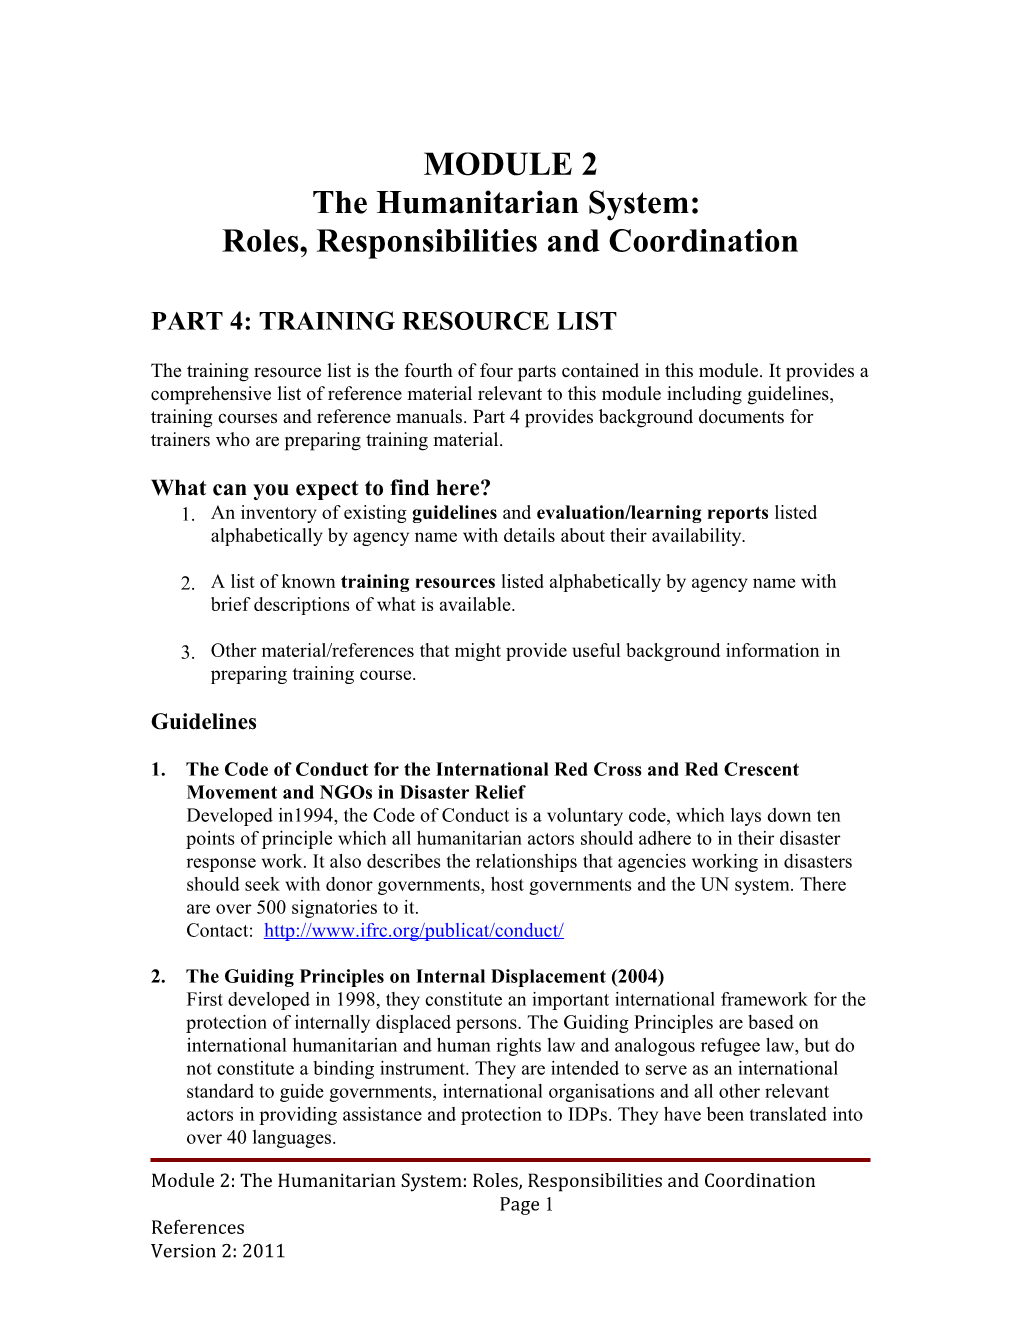 Part 4: Training Resource List